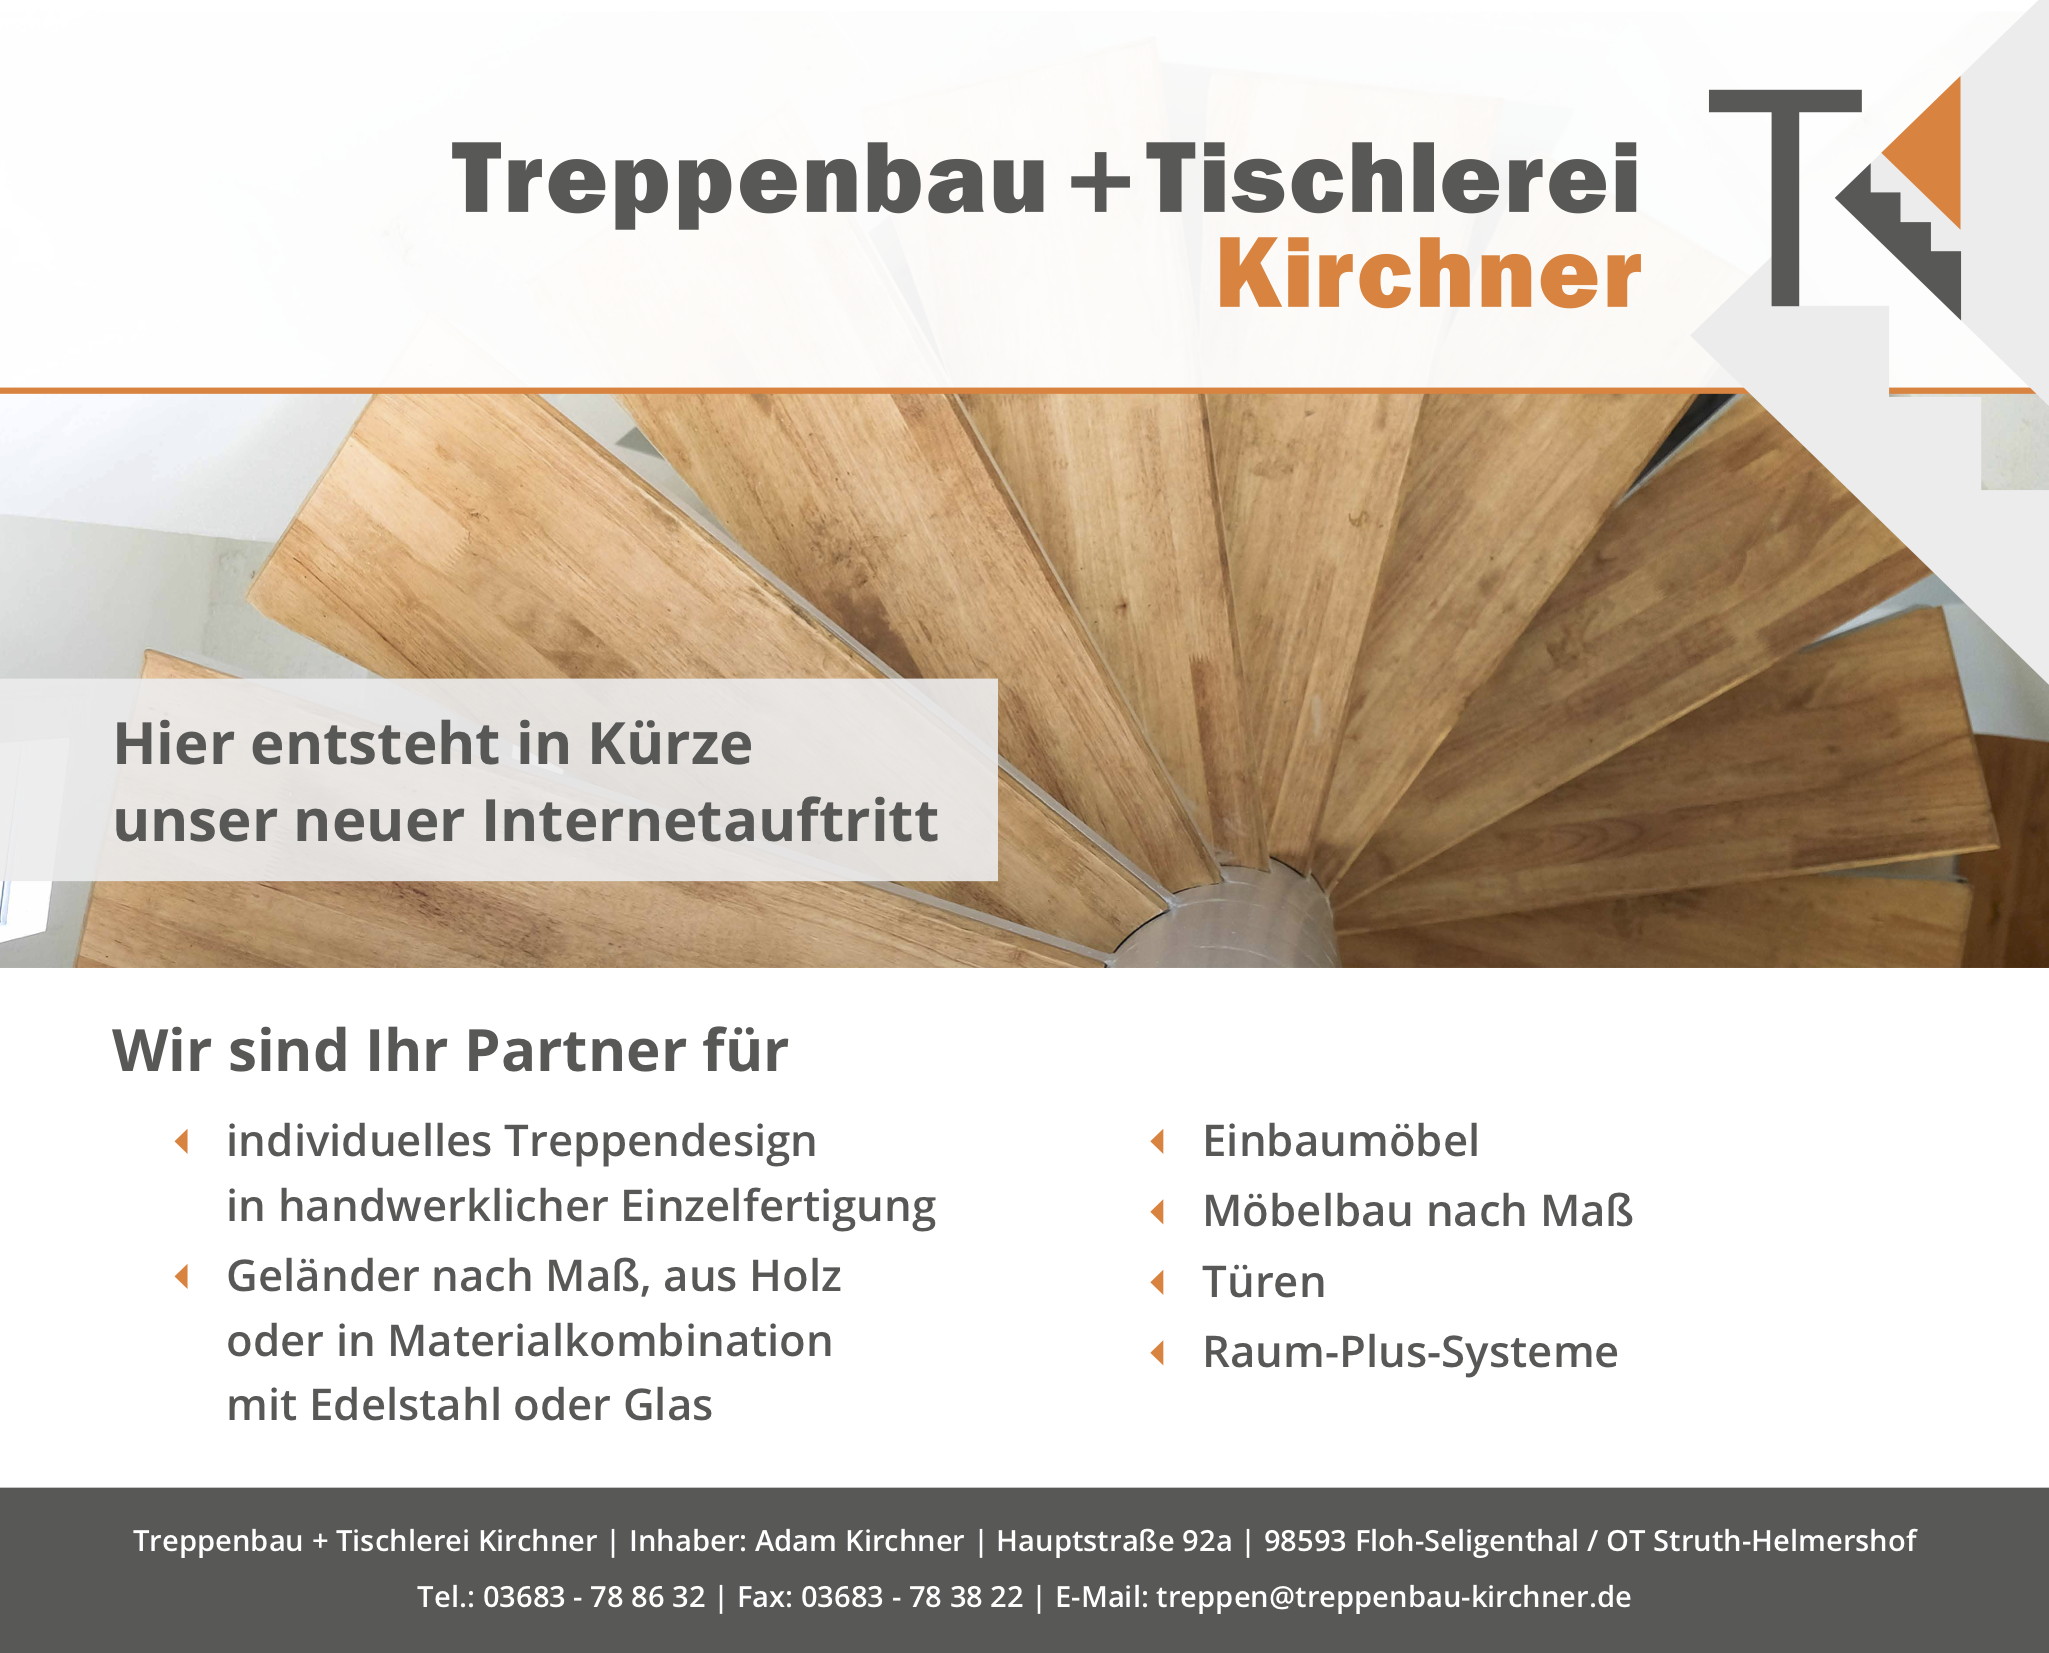 Treppenbau + Tischlerei Kirchner